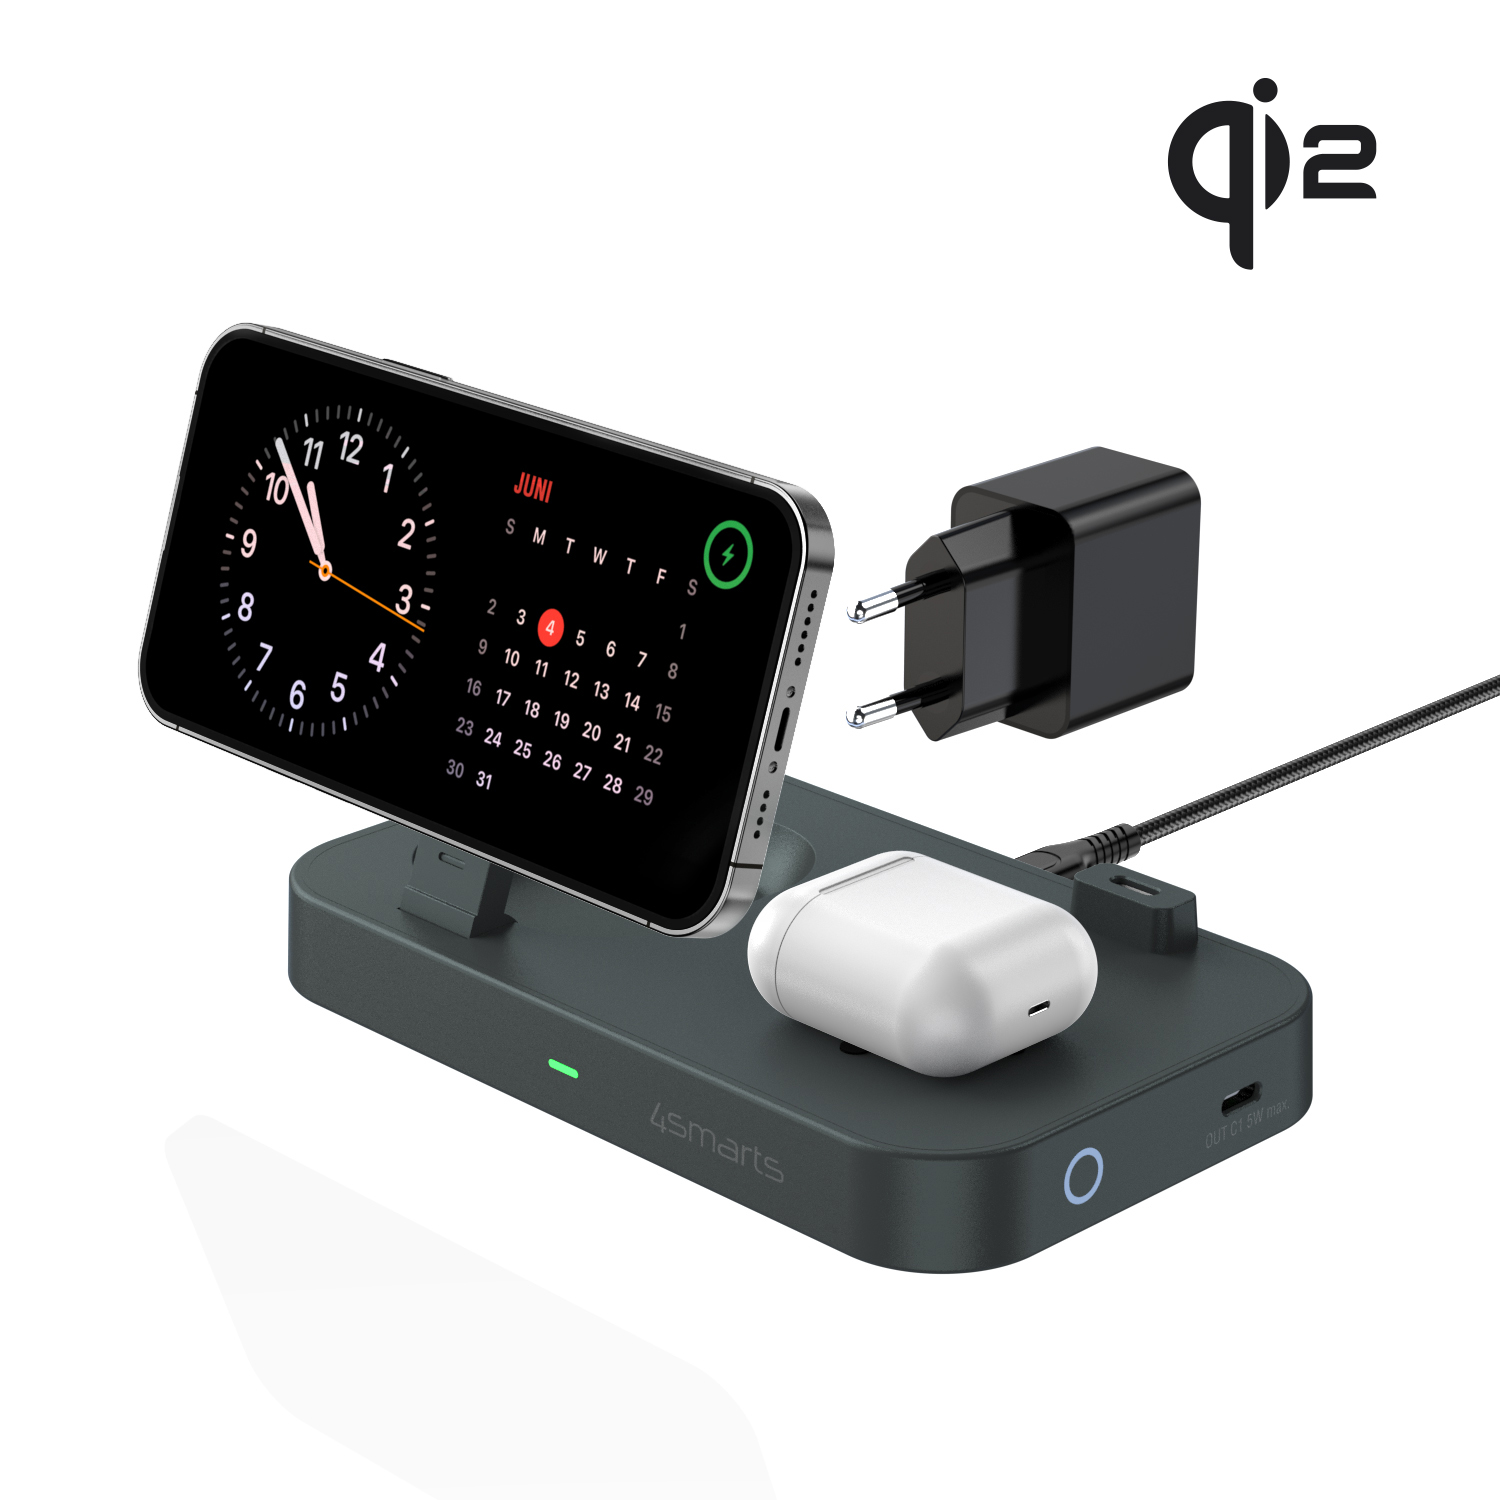 Die 3 in 1 4smarts Qi2 Trident Ladestation ist der perfekte Begleiter für dein iPhone, deine Apple Watch und dein TWS Headset. 